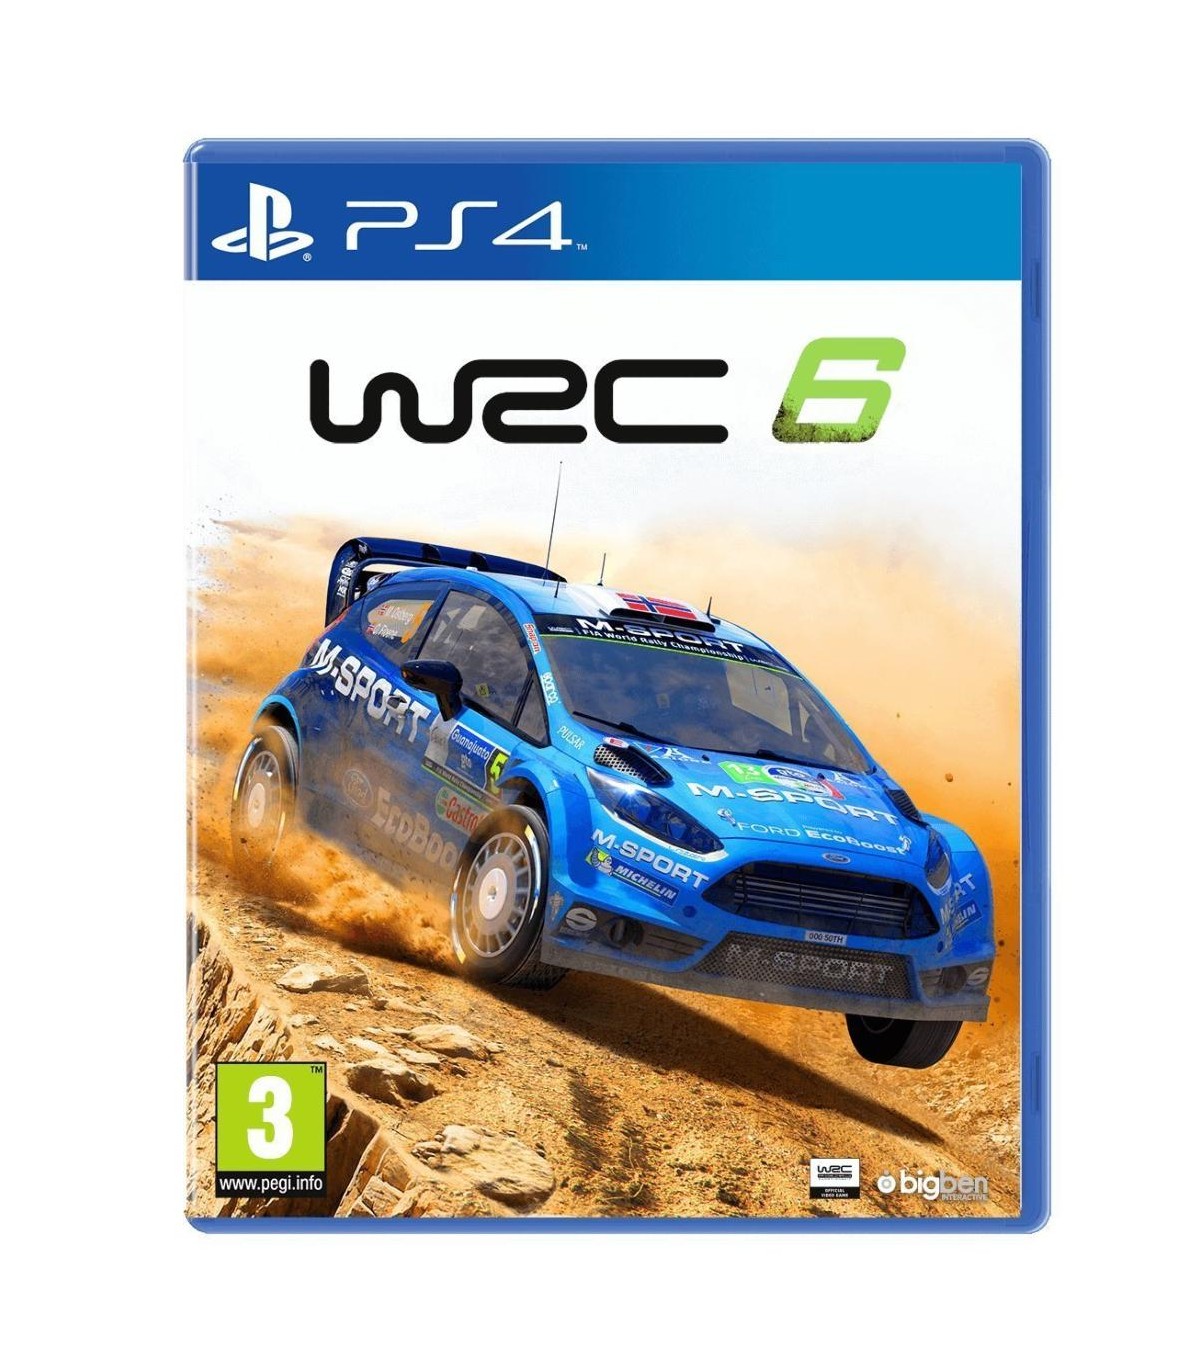 بازی WRC 6 کارکرده - پلی استیشن 4